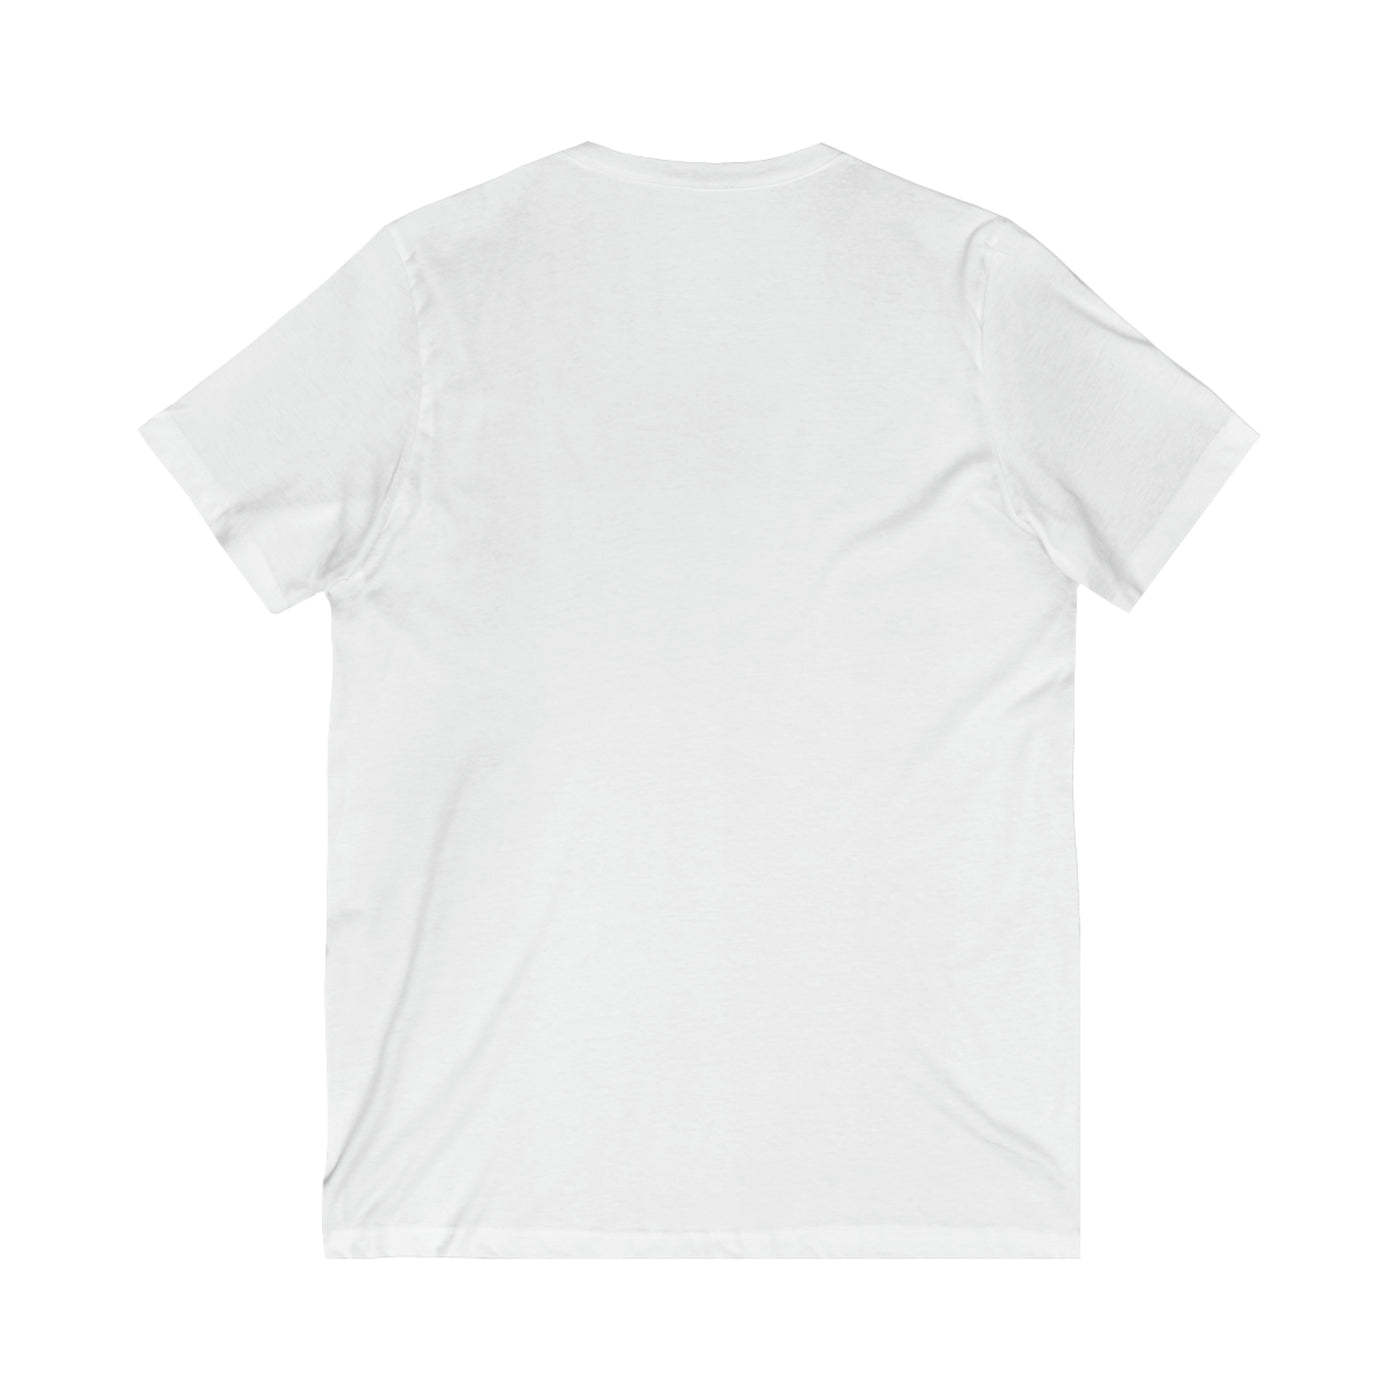 Unisex jersey T-shirt met korte mouwen en V-hals